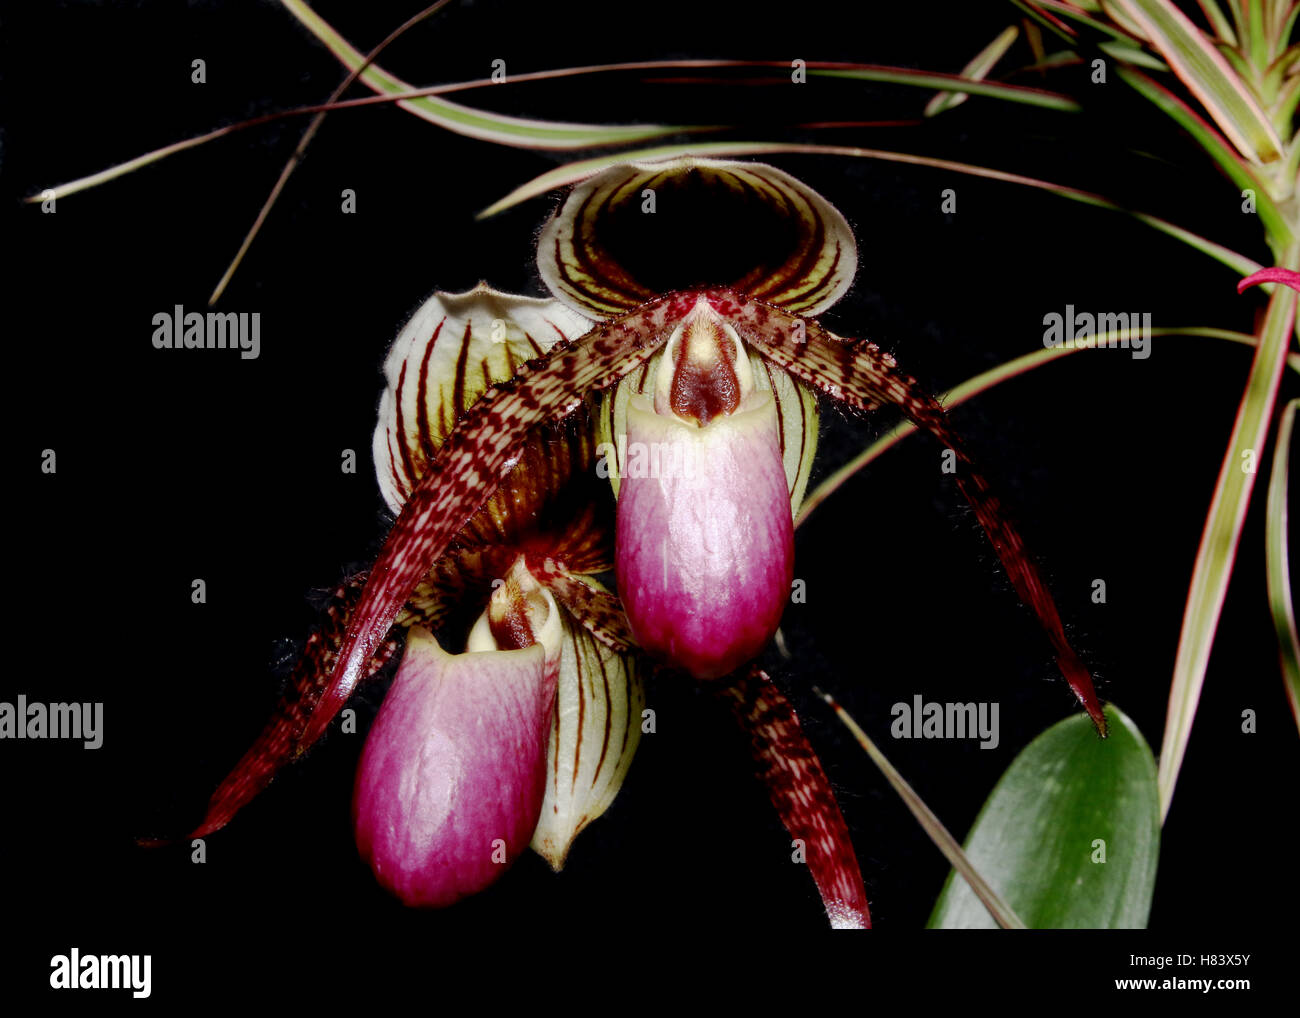 Lady Slipper Orchid. Lady’s Slipper Orchid. Paphiopedilum Trandoll. Paphiopedilum liemianum x Paphiopedilum rothschildianum. Orc Stock Photo